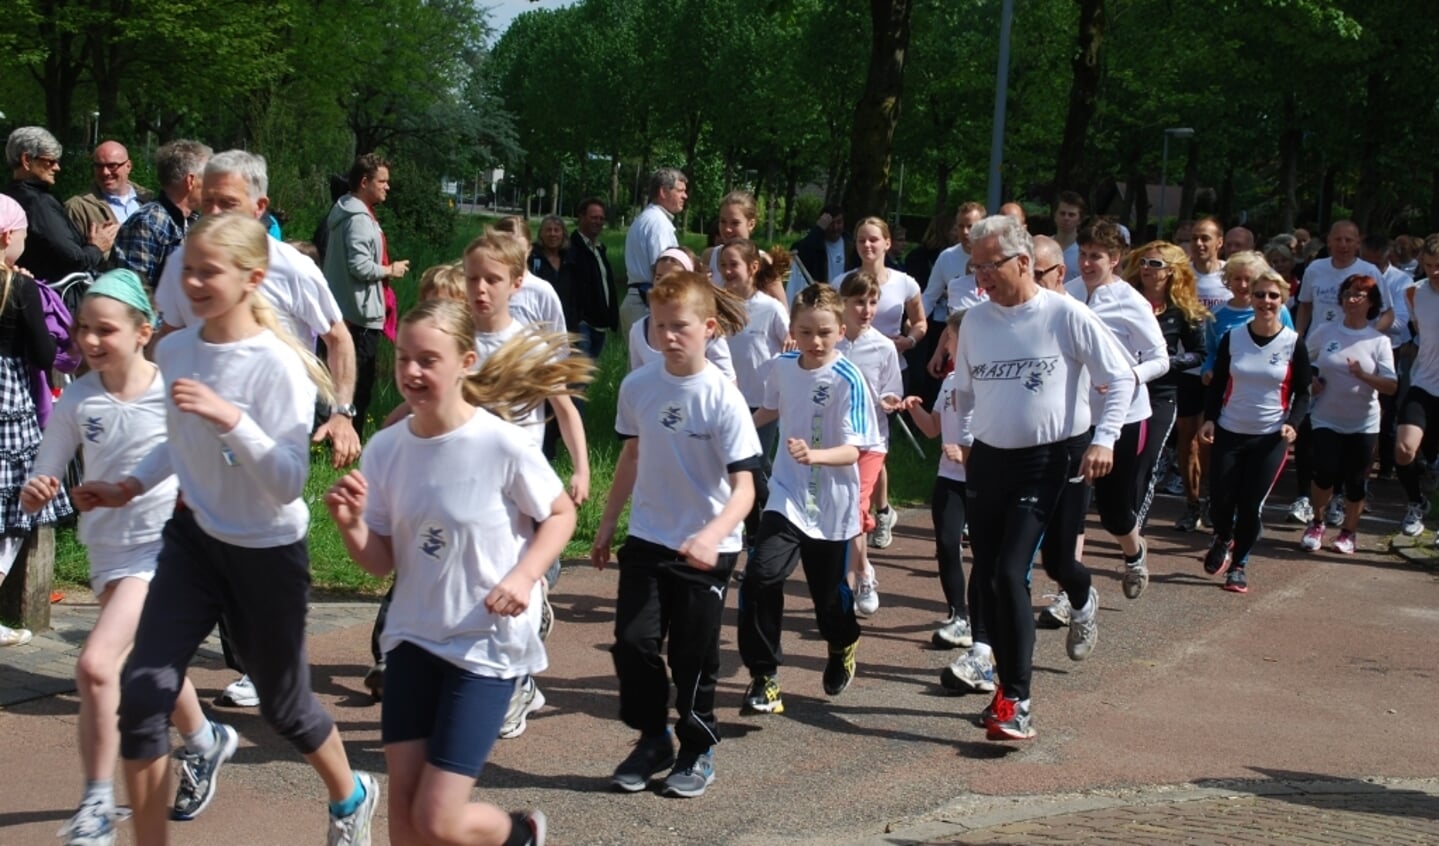 deelnemers aan de Roel Boerma loop zijn te herkennen aan het witte T-shirt.